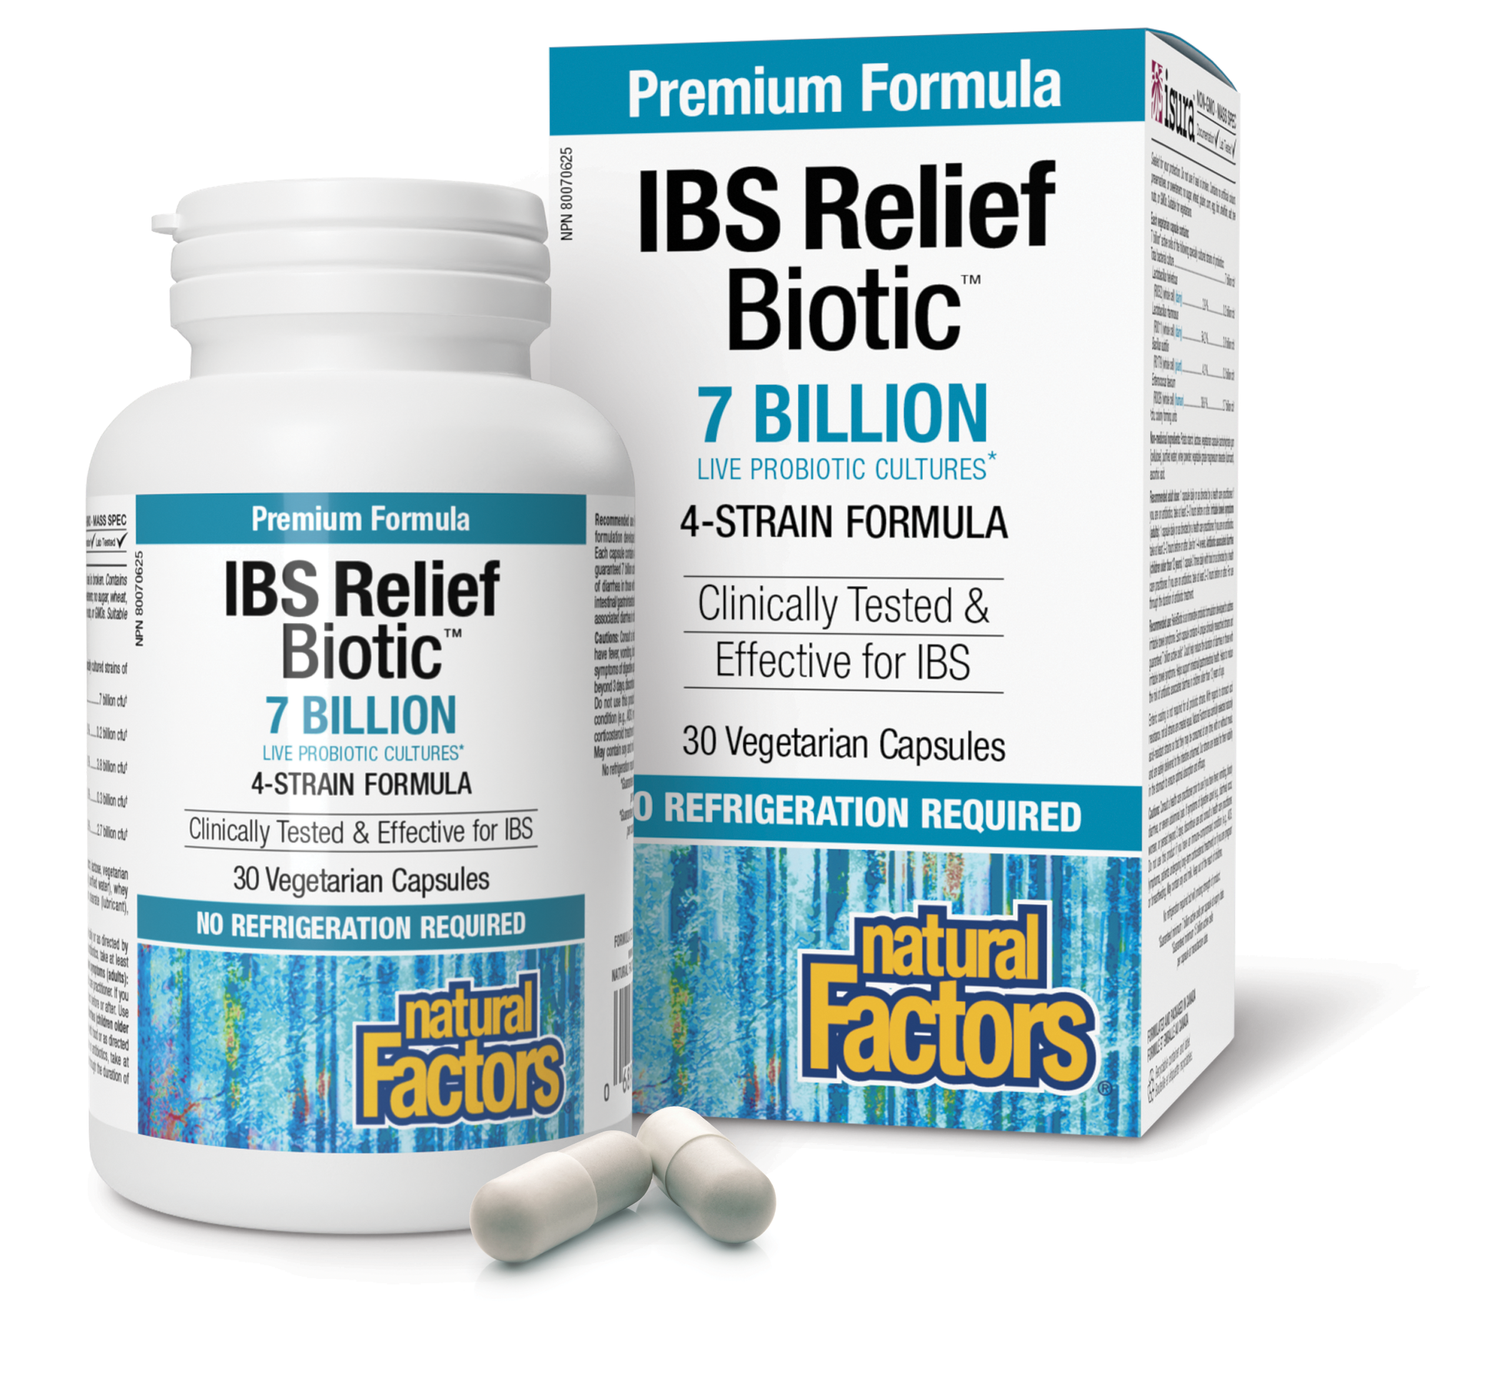 IBS Relief Biotic 7 Billion Live Probiotic Cultures, Natural Factors|v|image|1861